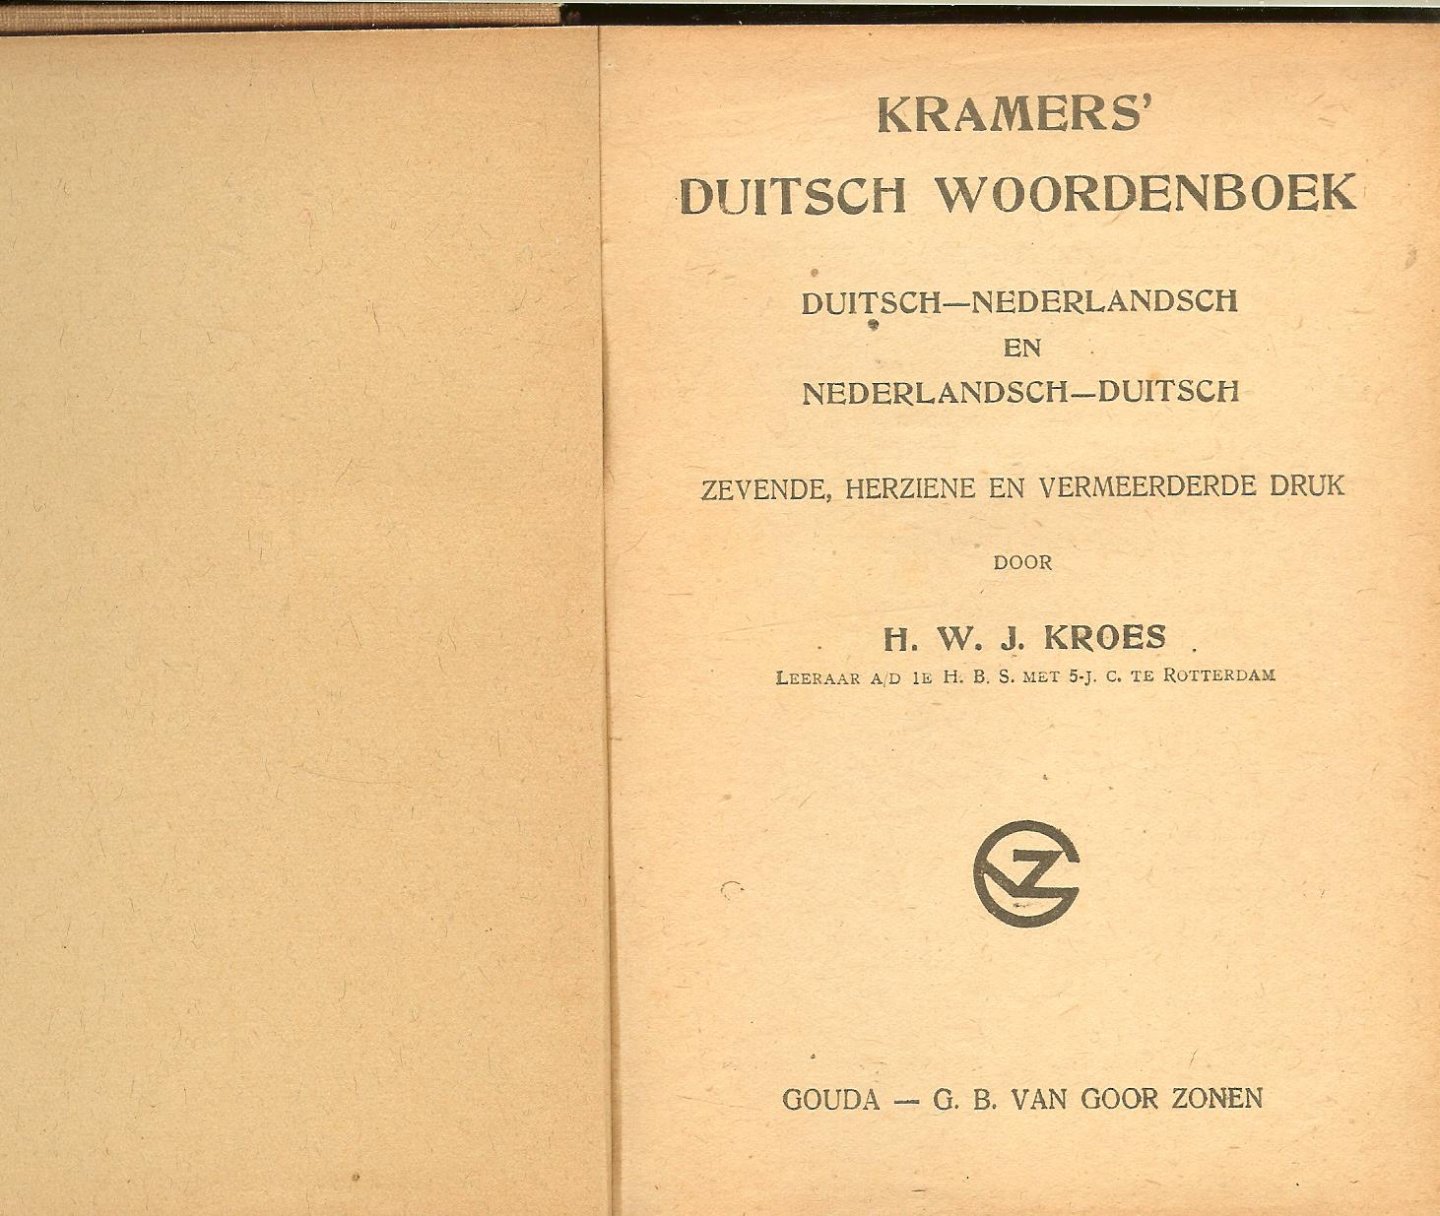 H.W.J.KROES en  Dr. F.P.H. Prick van Wely - DUITSCH WOORDENBOEK duitsch-nederlandsch *  nederlandsch-duitsch